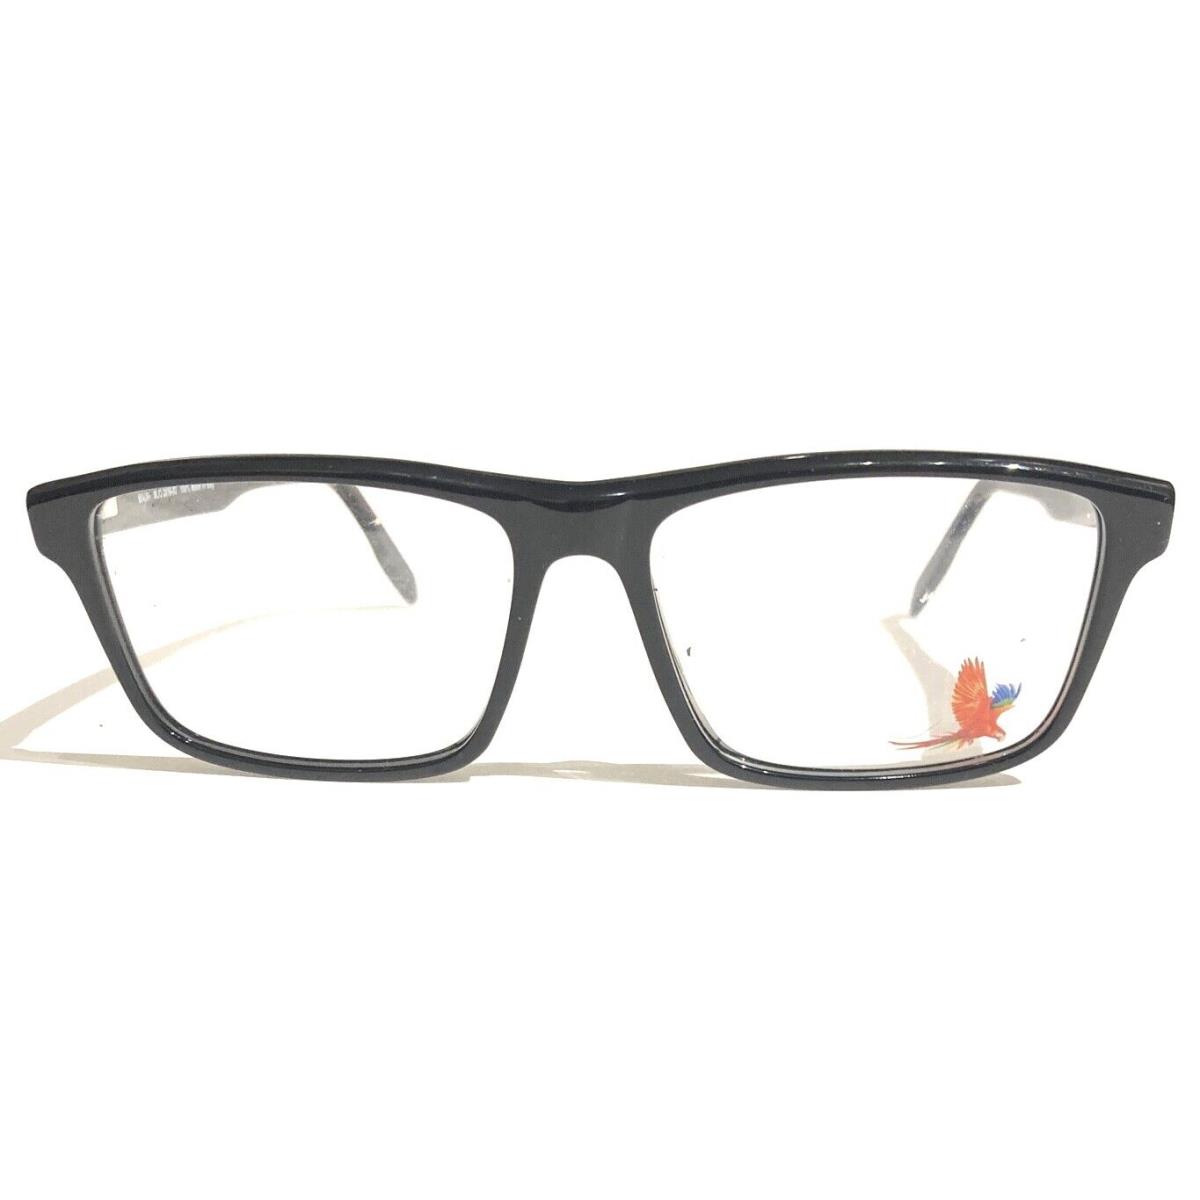 Maui Jim MJO2116 002 Black Eyeglasses RX 55-16-145 MM Italy